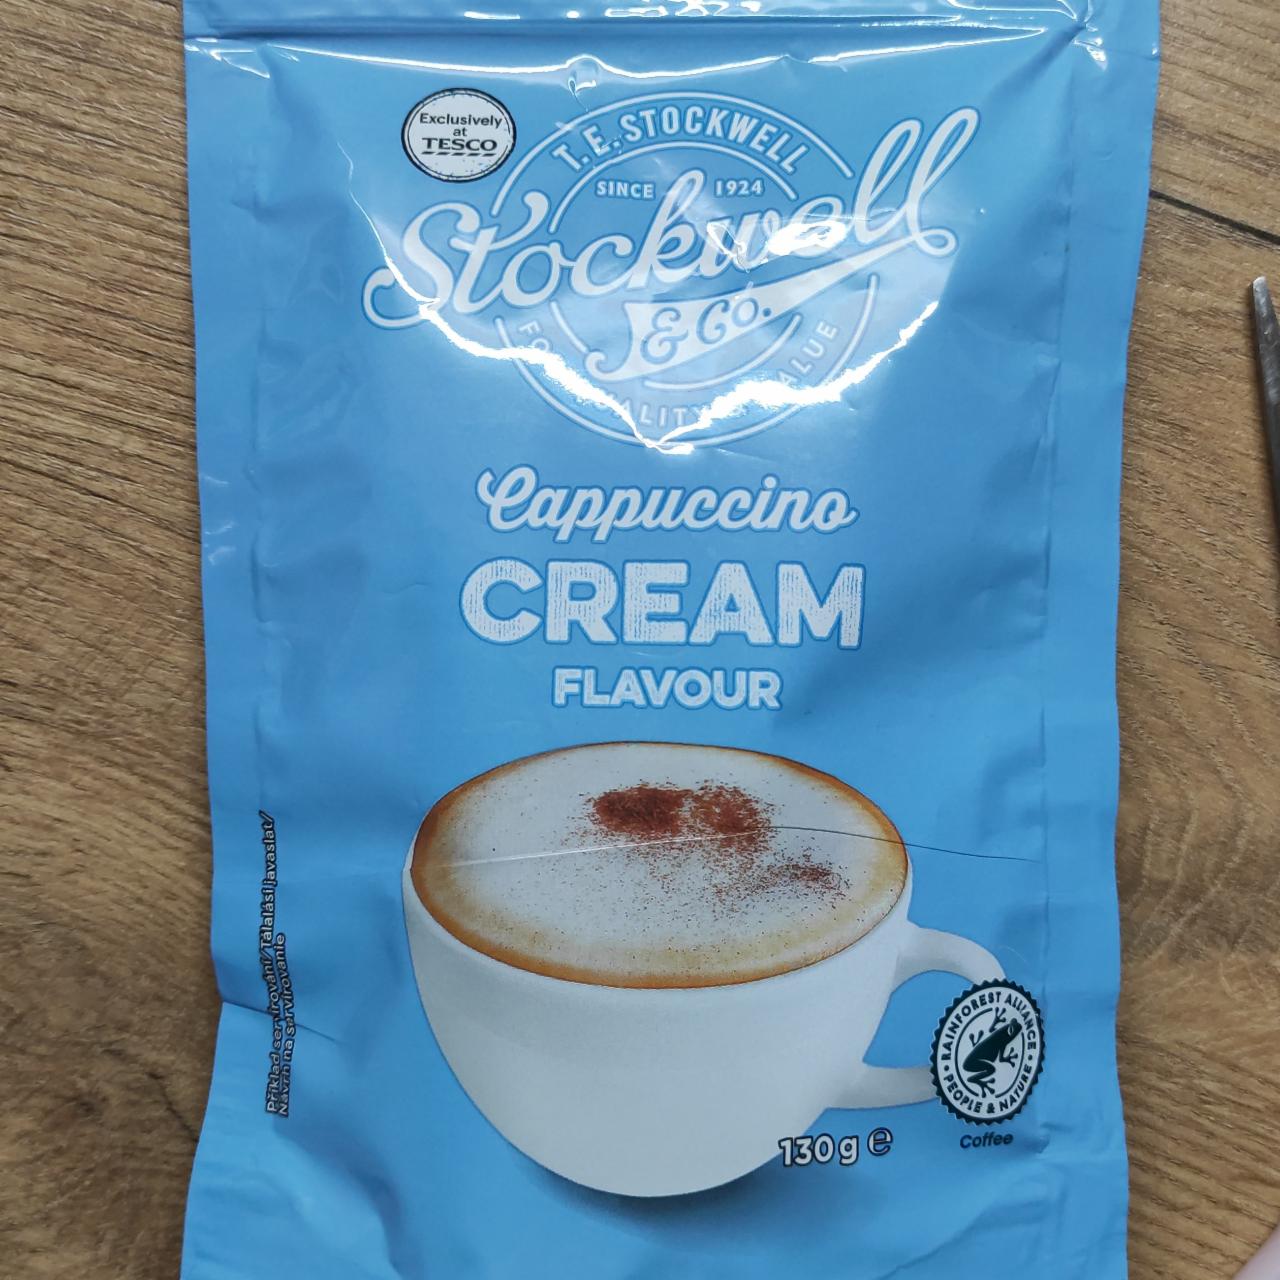 Fotografie - Cappuccino cream flavour Stockwell